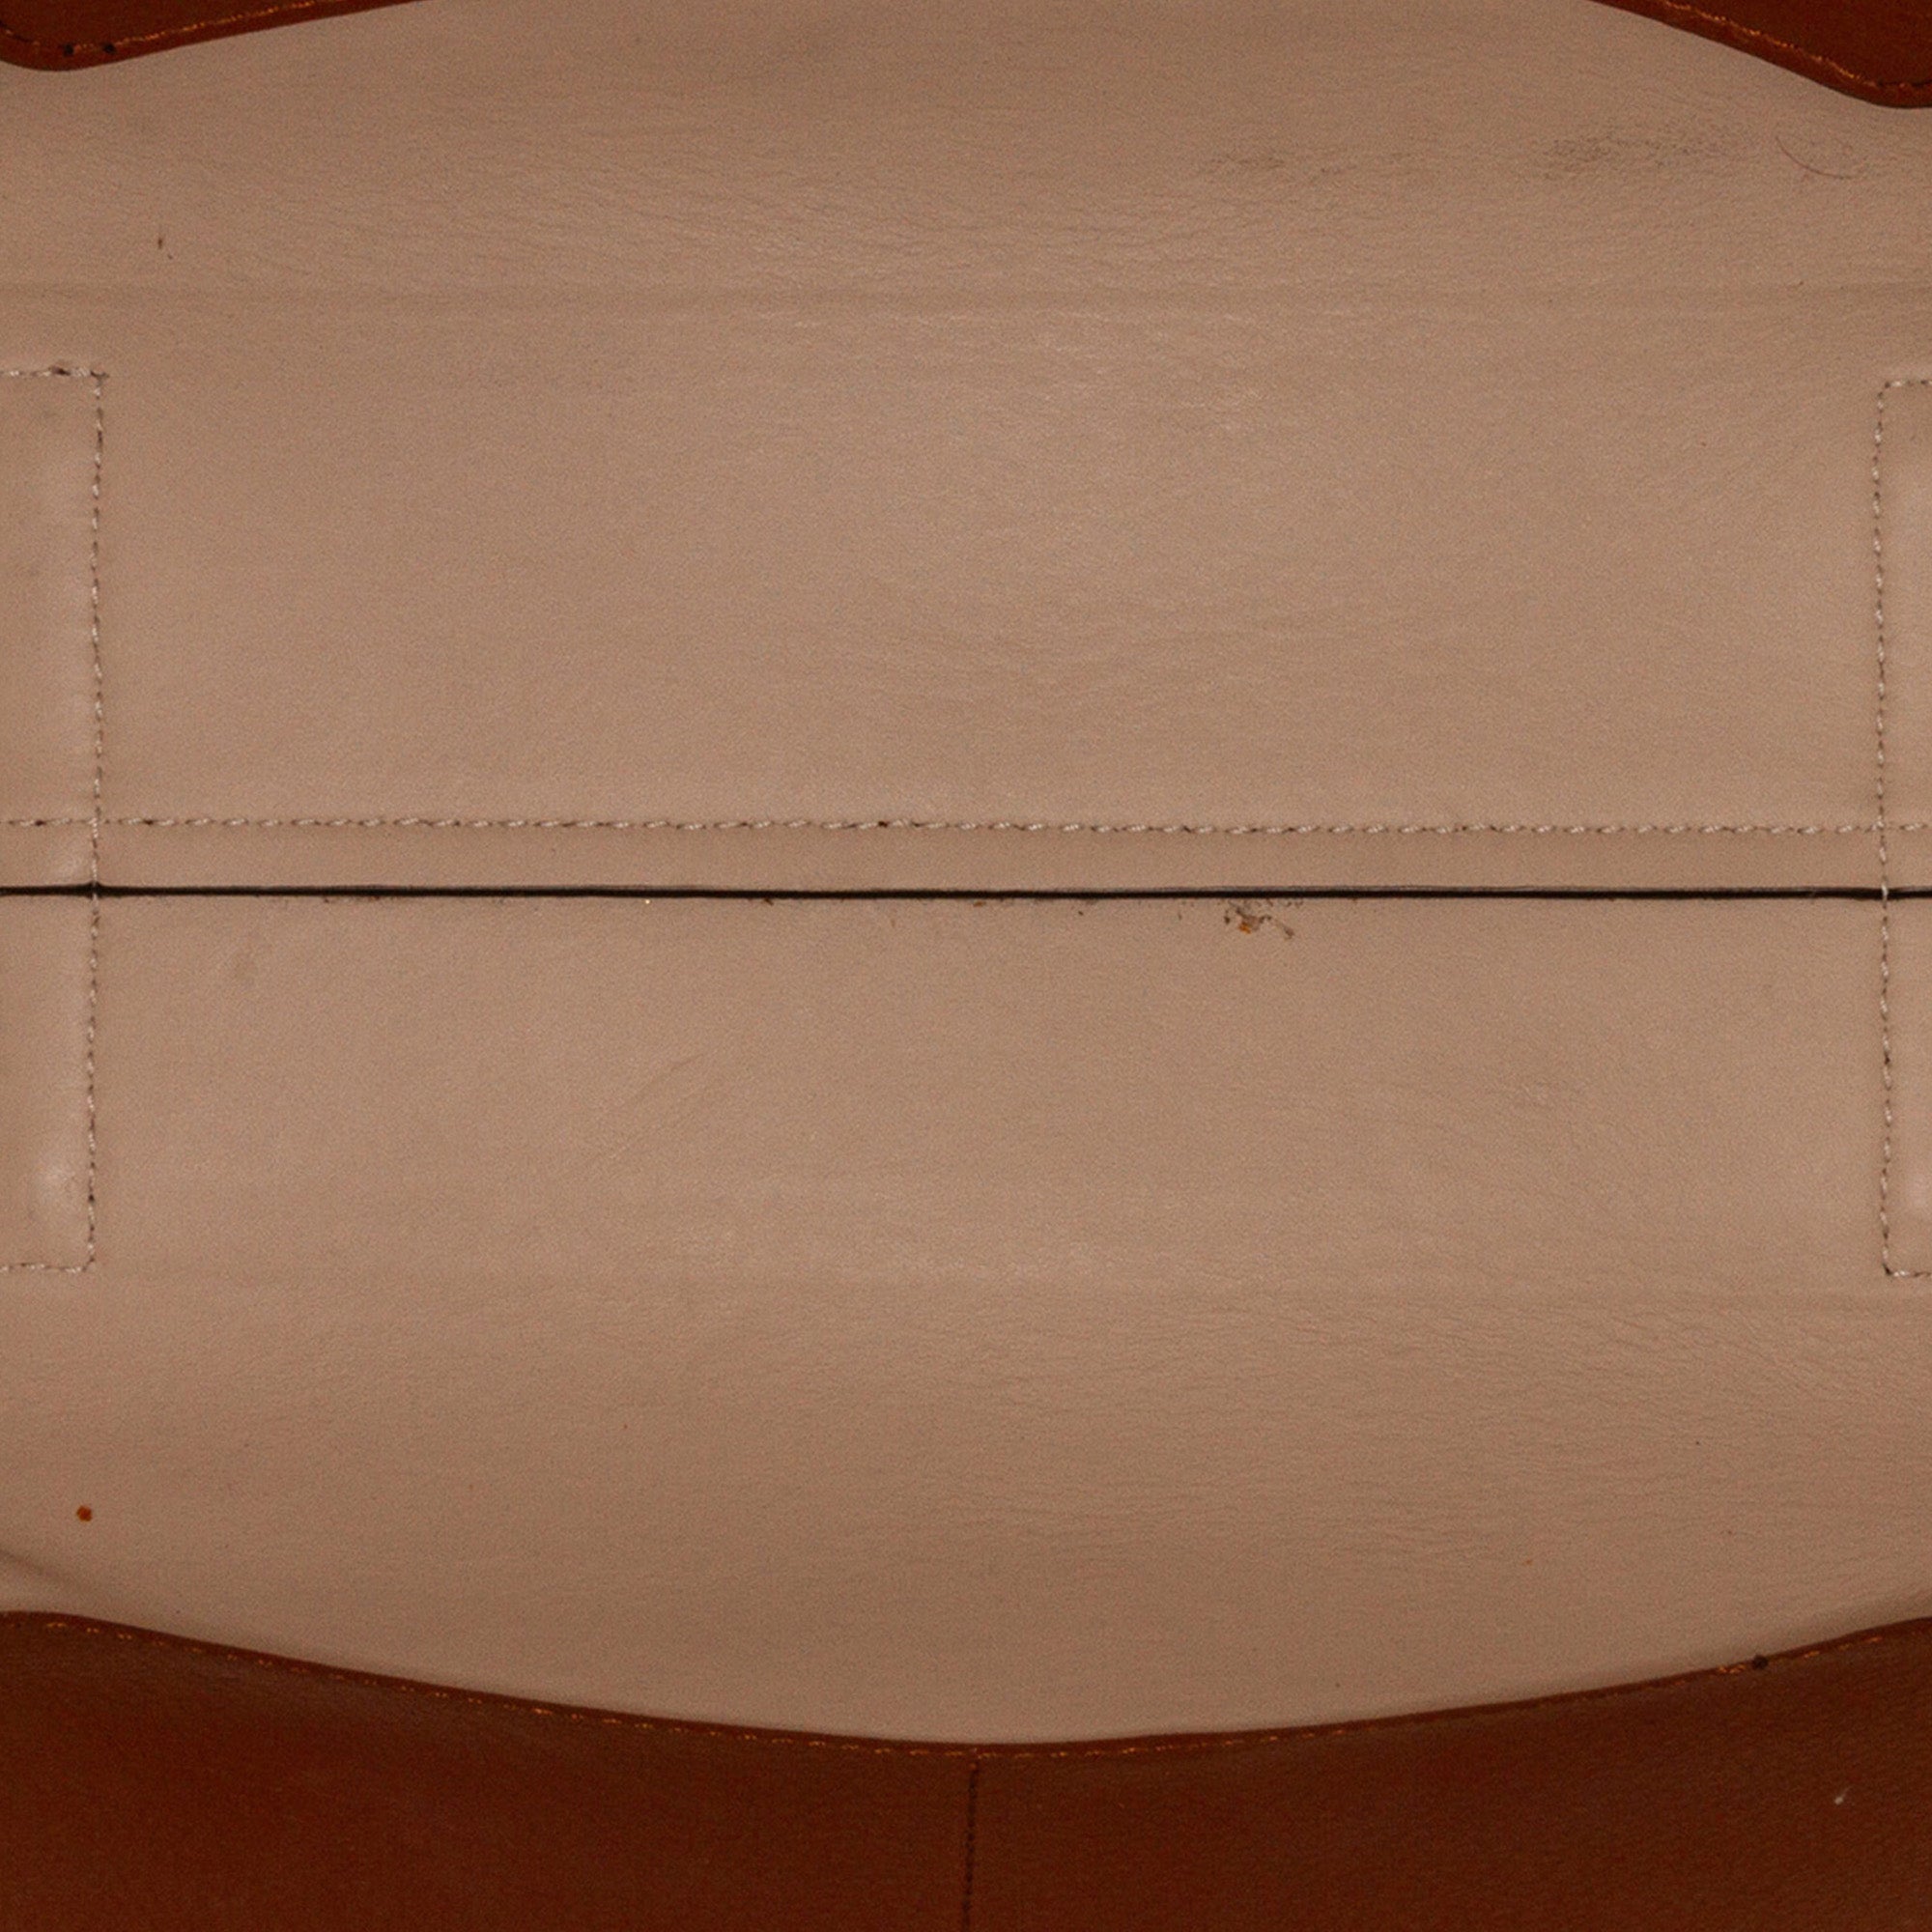 Brown Burberry Medium Leather Belt Bag Satchel – Designer Revival